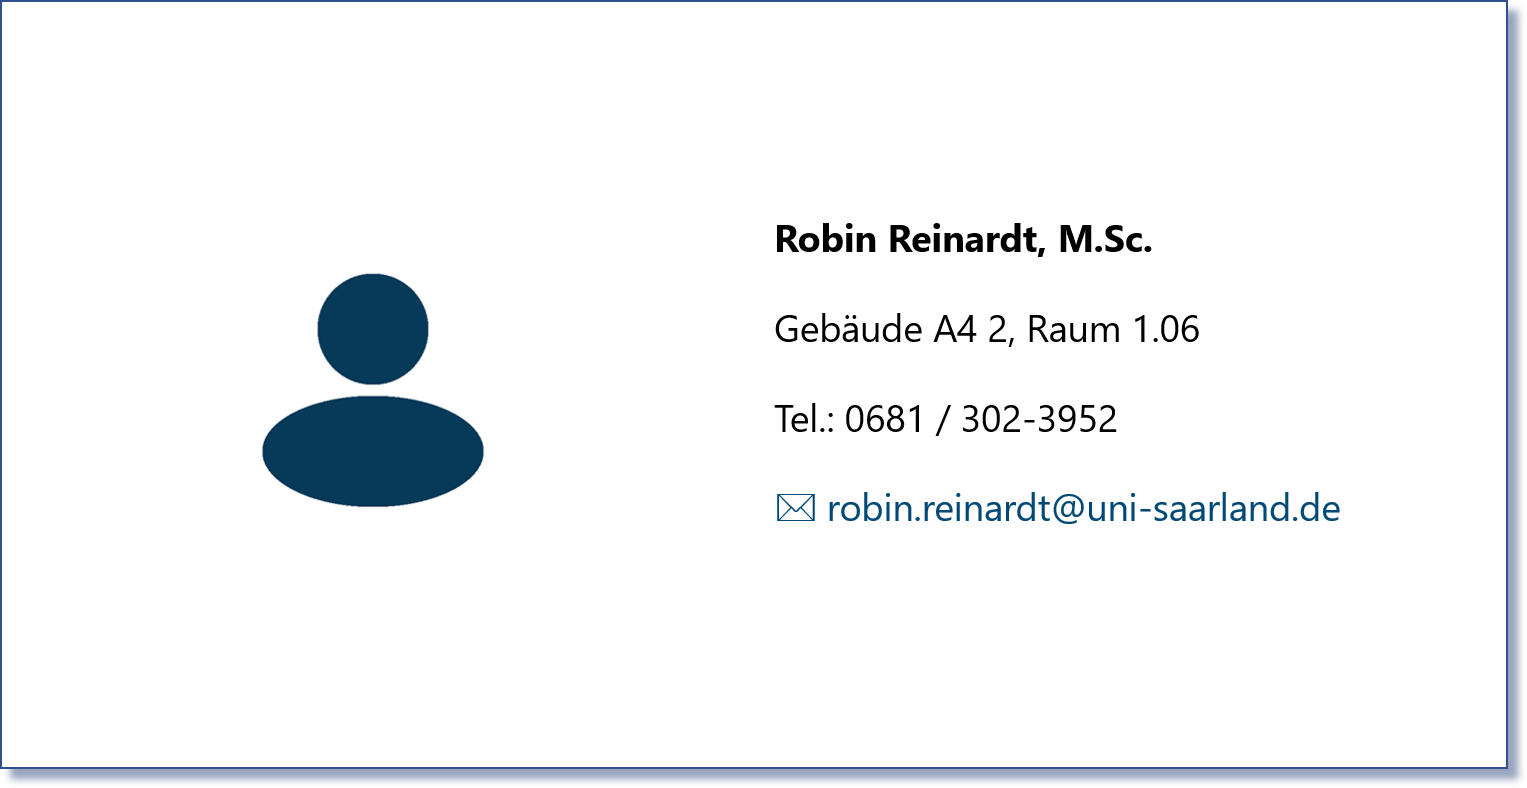 Robin Reinardt